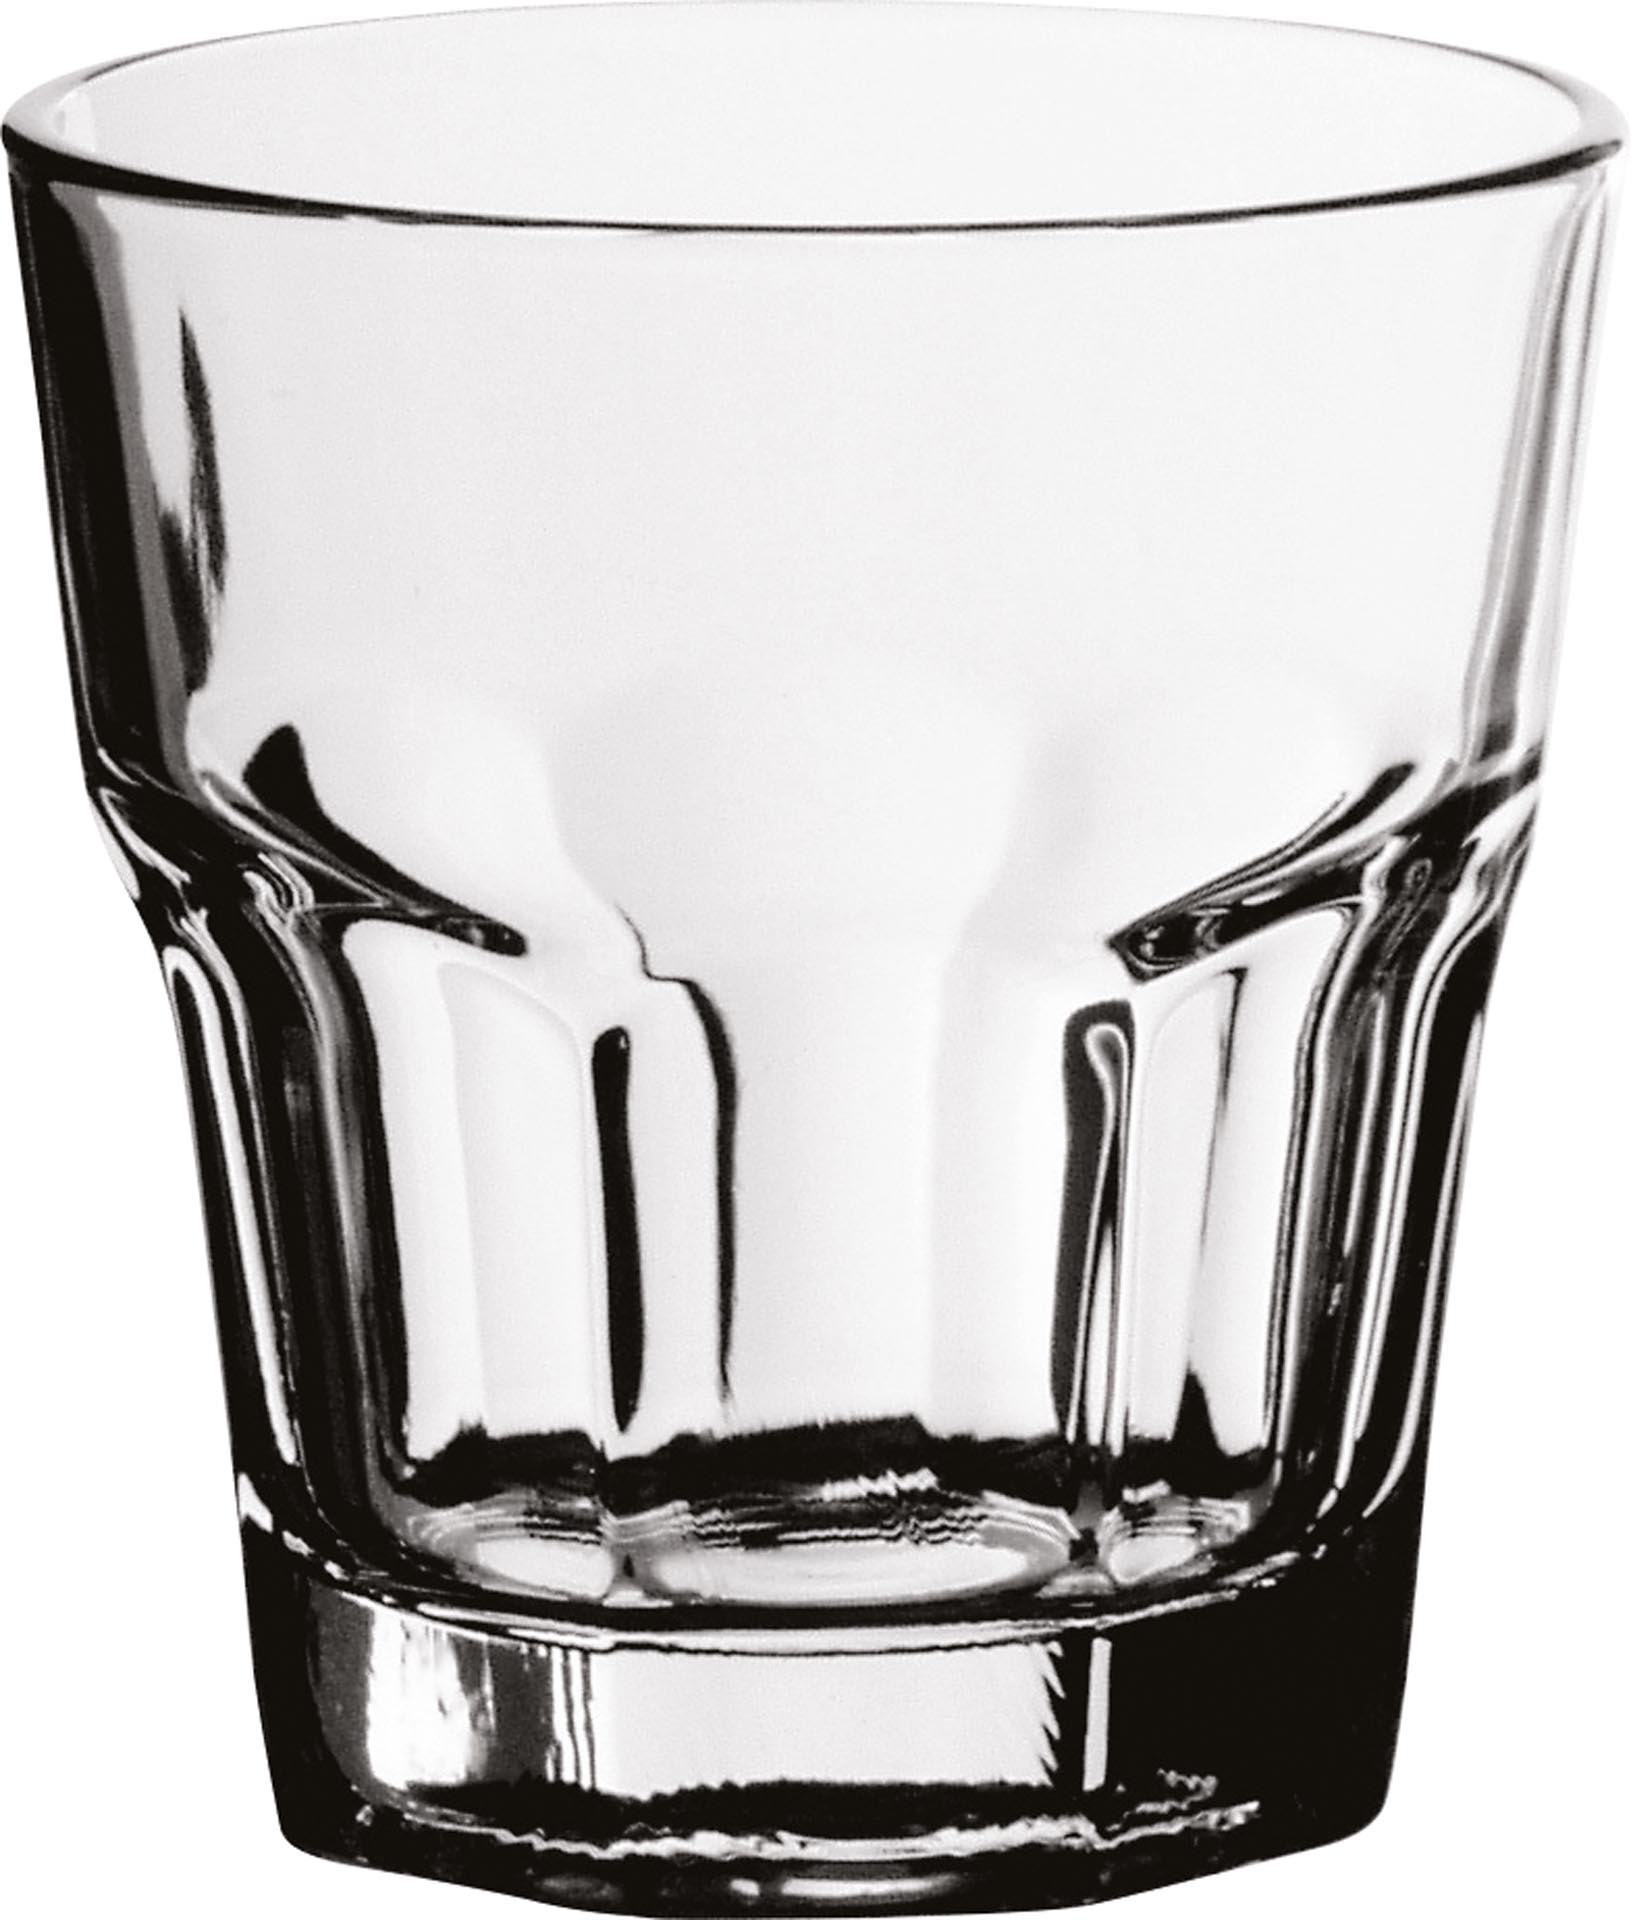 Casablanca, Whiskyglas 24,6 cl ungeeicht